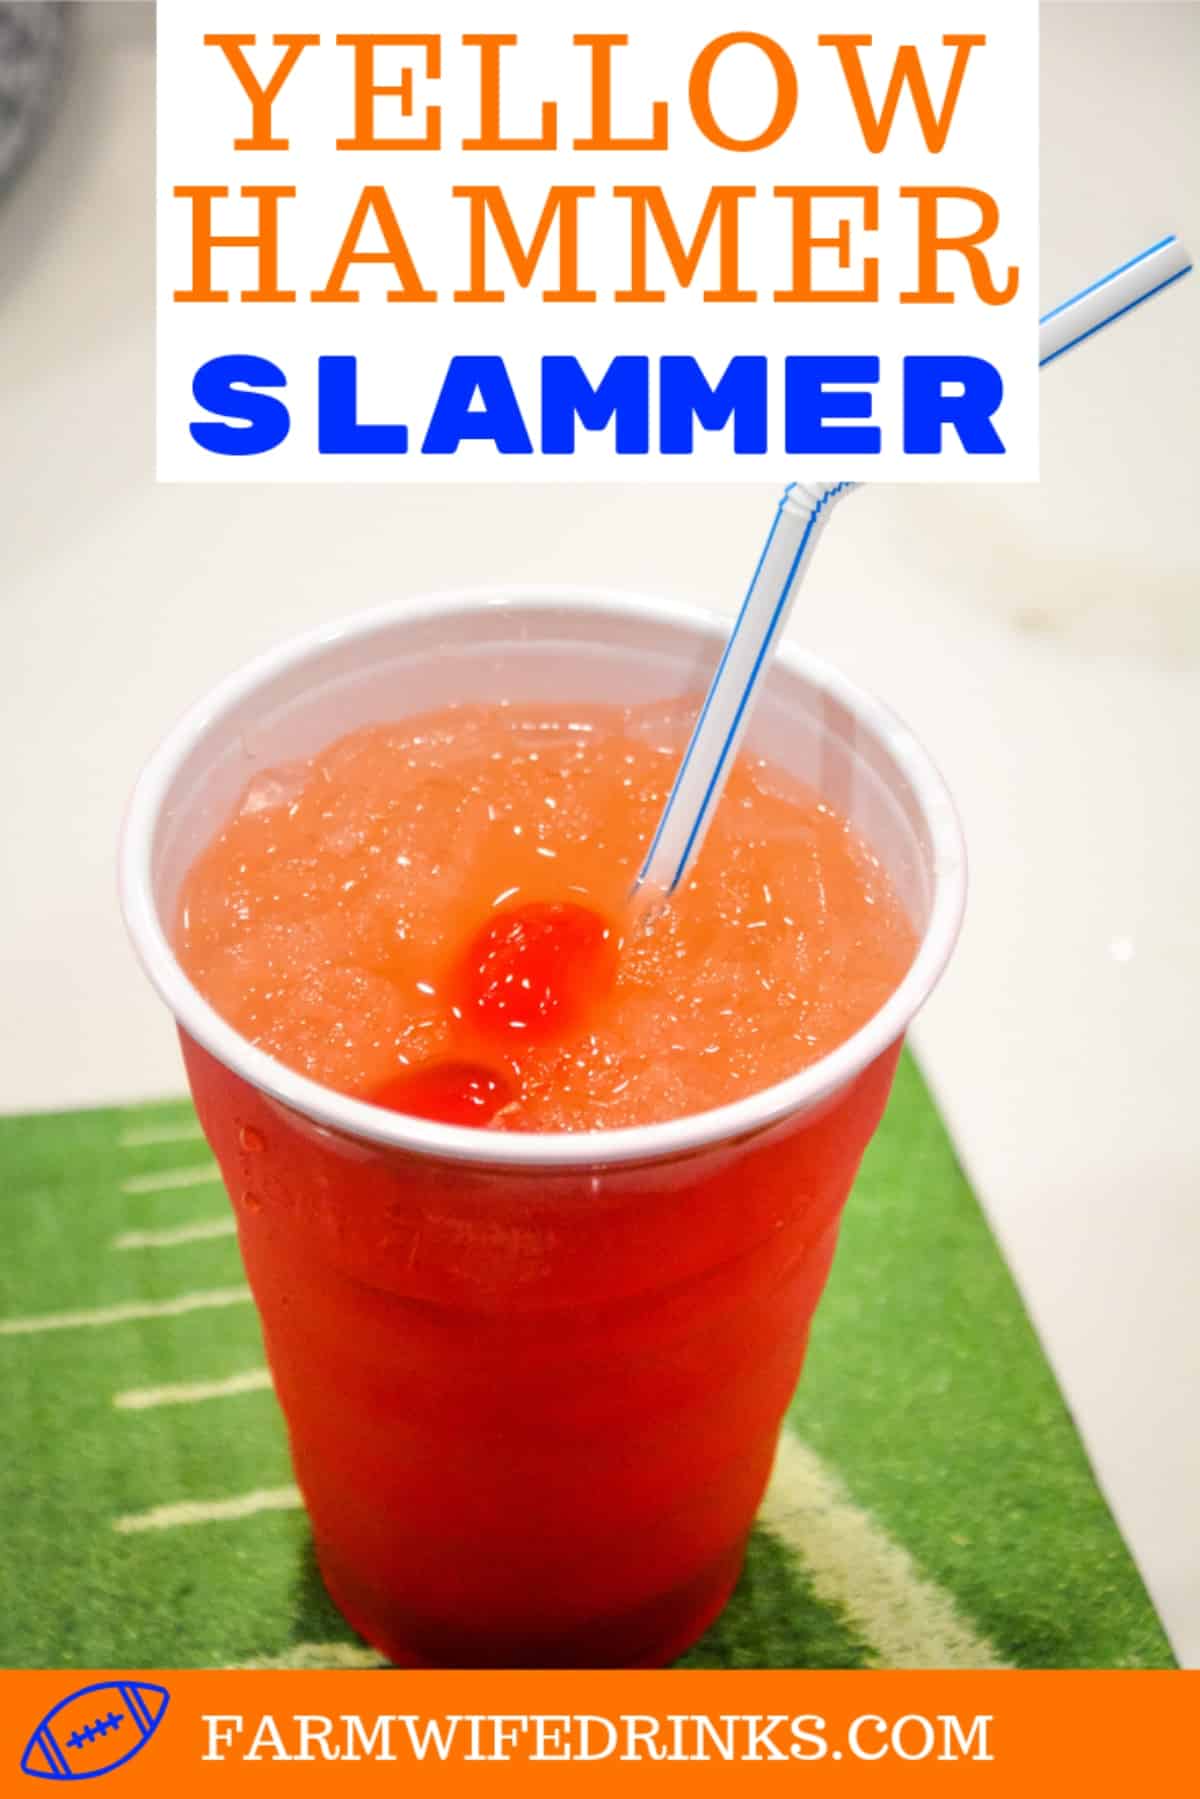 Yellow Hammer Slammer Drink fruit rum drinks